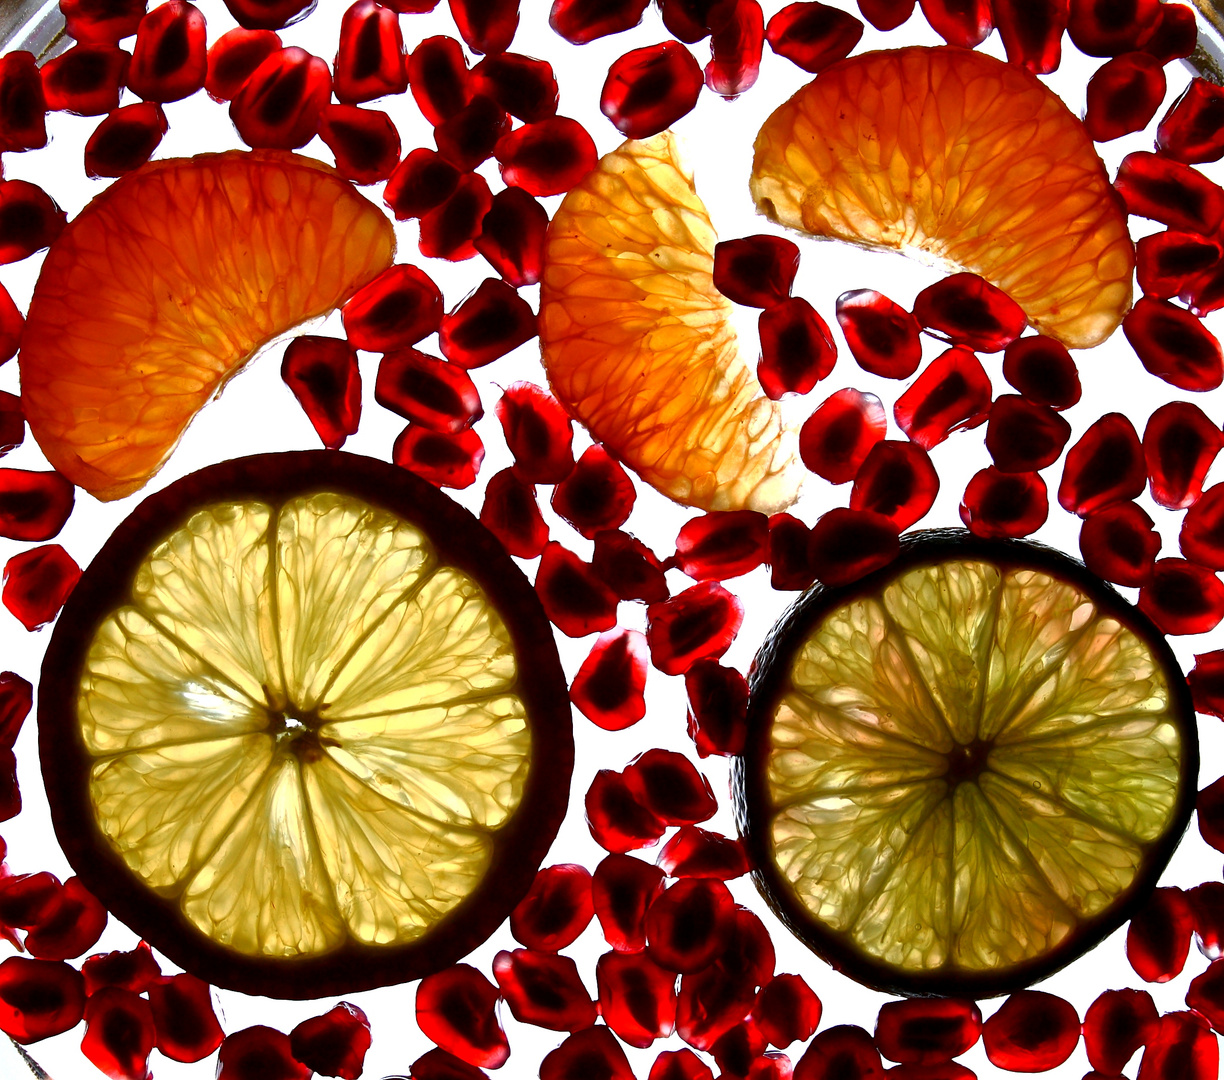 Zitrusfrüchte an Granatapfelkernspiegel